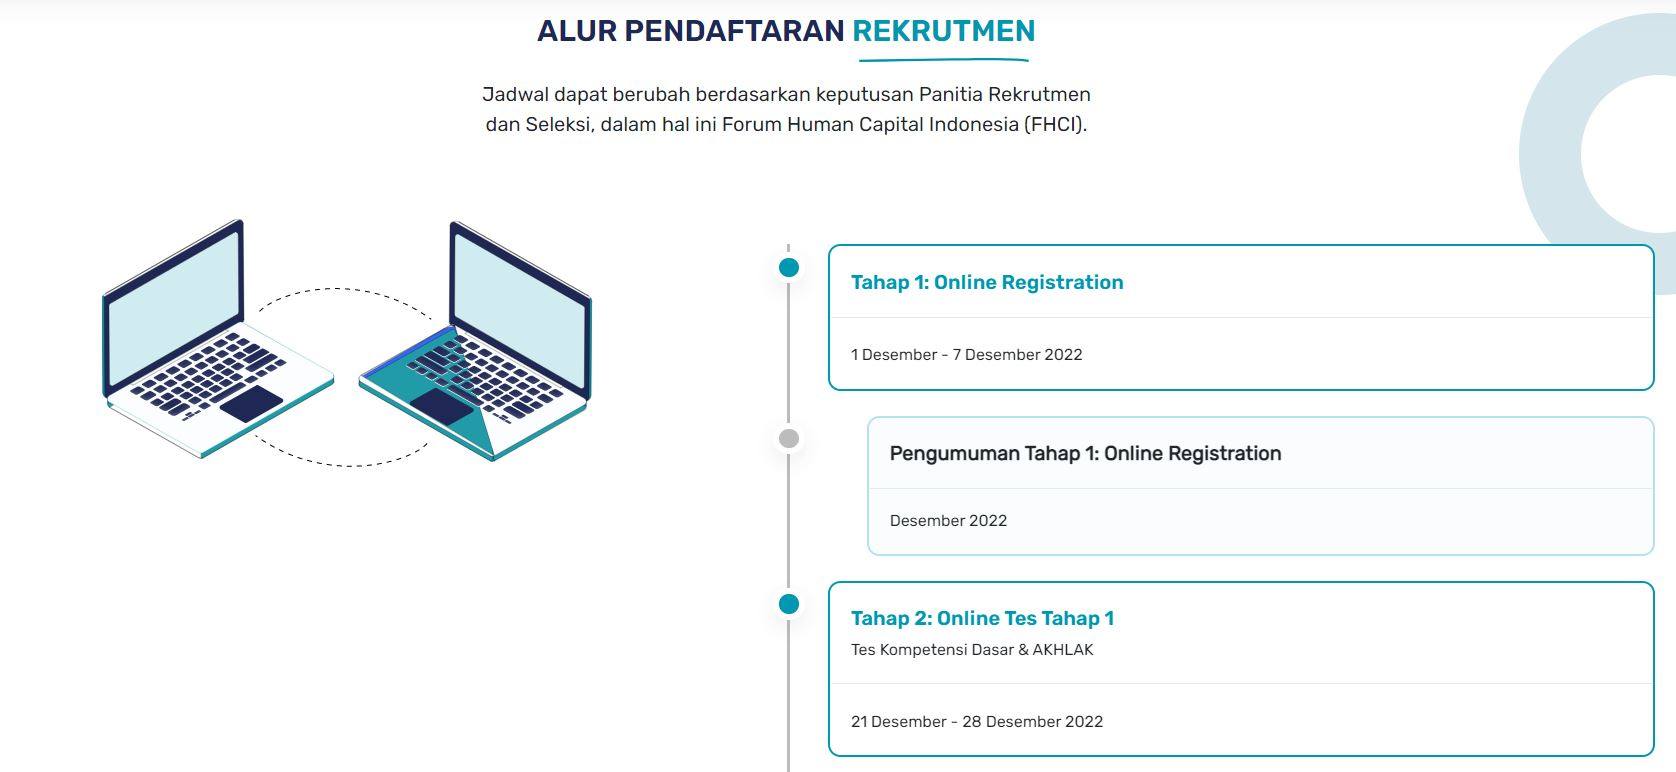 Begini Cara Mengatasi Salah Upload Dokumen Pendaftaran Rekrutmen Bersama BUMN 2022